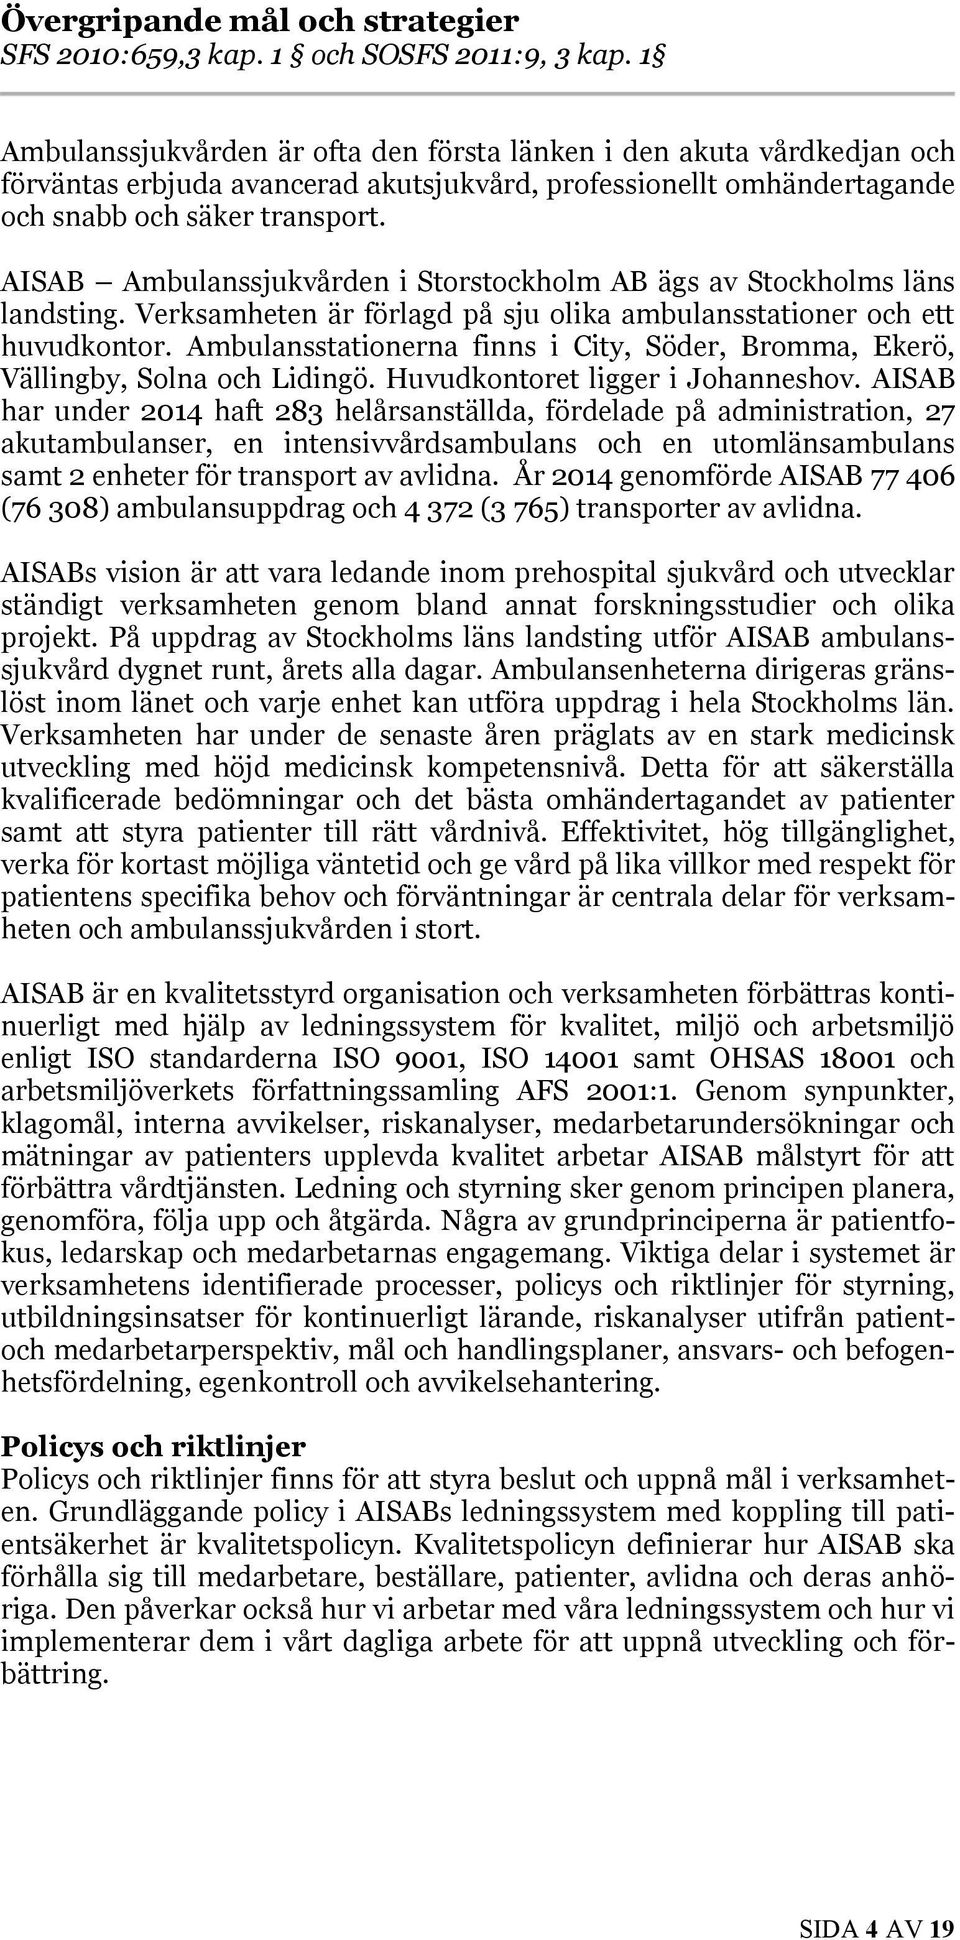 AISAB Ambulanssjukvården i Storstockholm AB ägs av Stockholms läns landsting. Verksamheten är förlagd på sju olika ambulansstationer och ett huvudkontor.